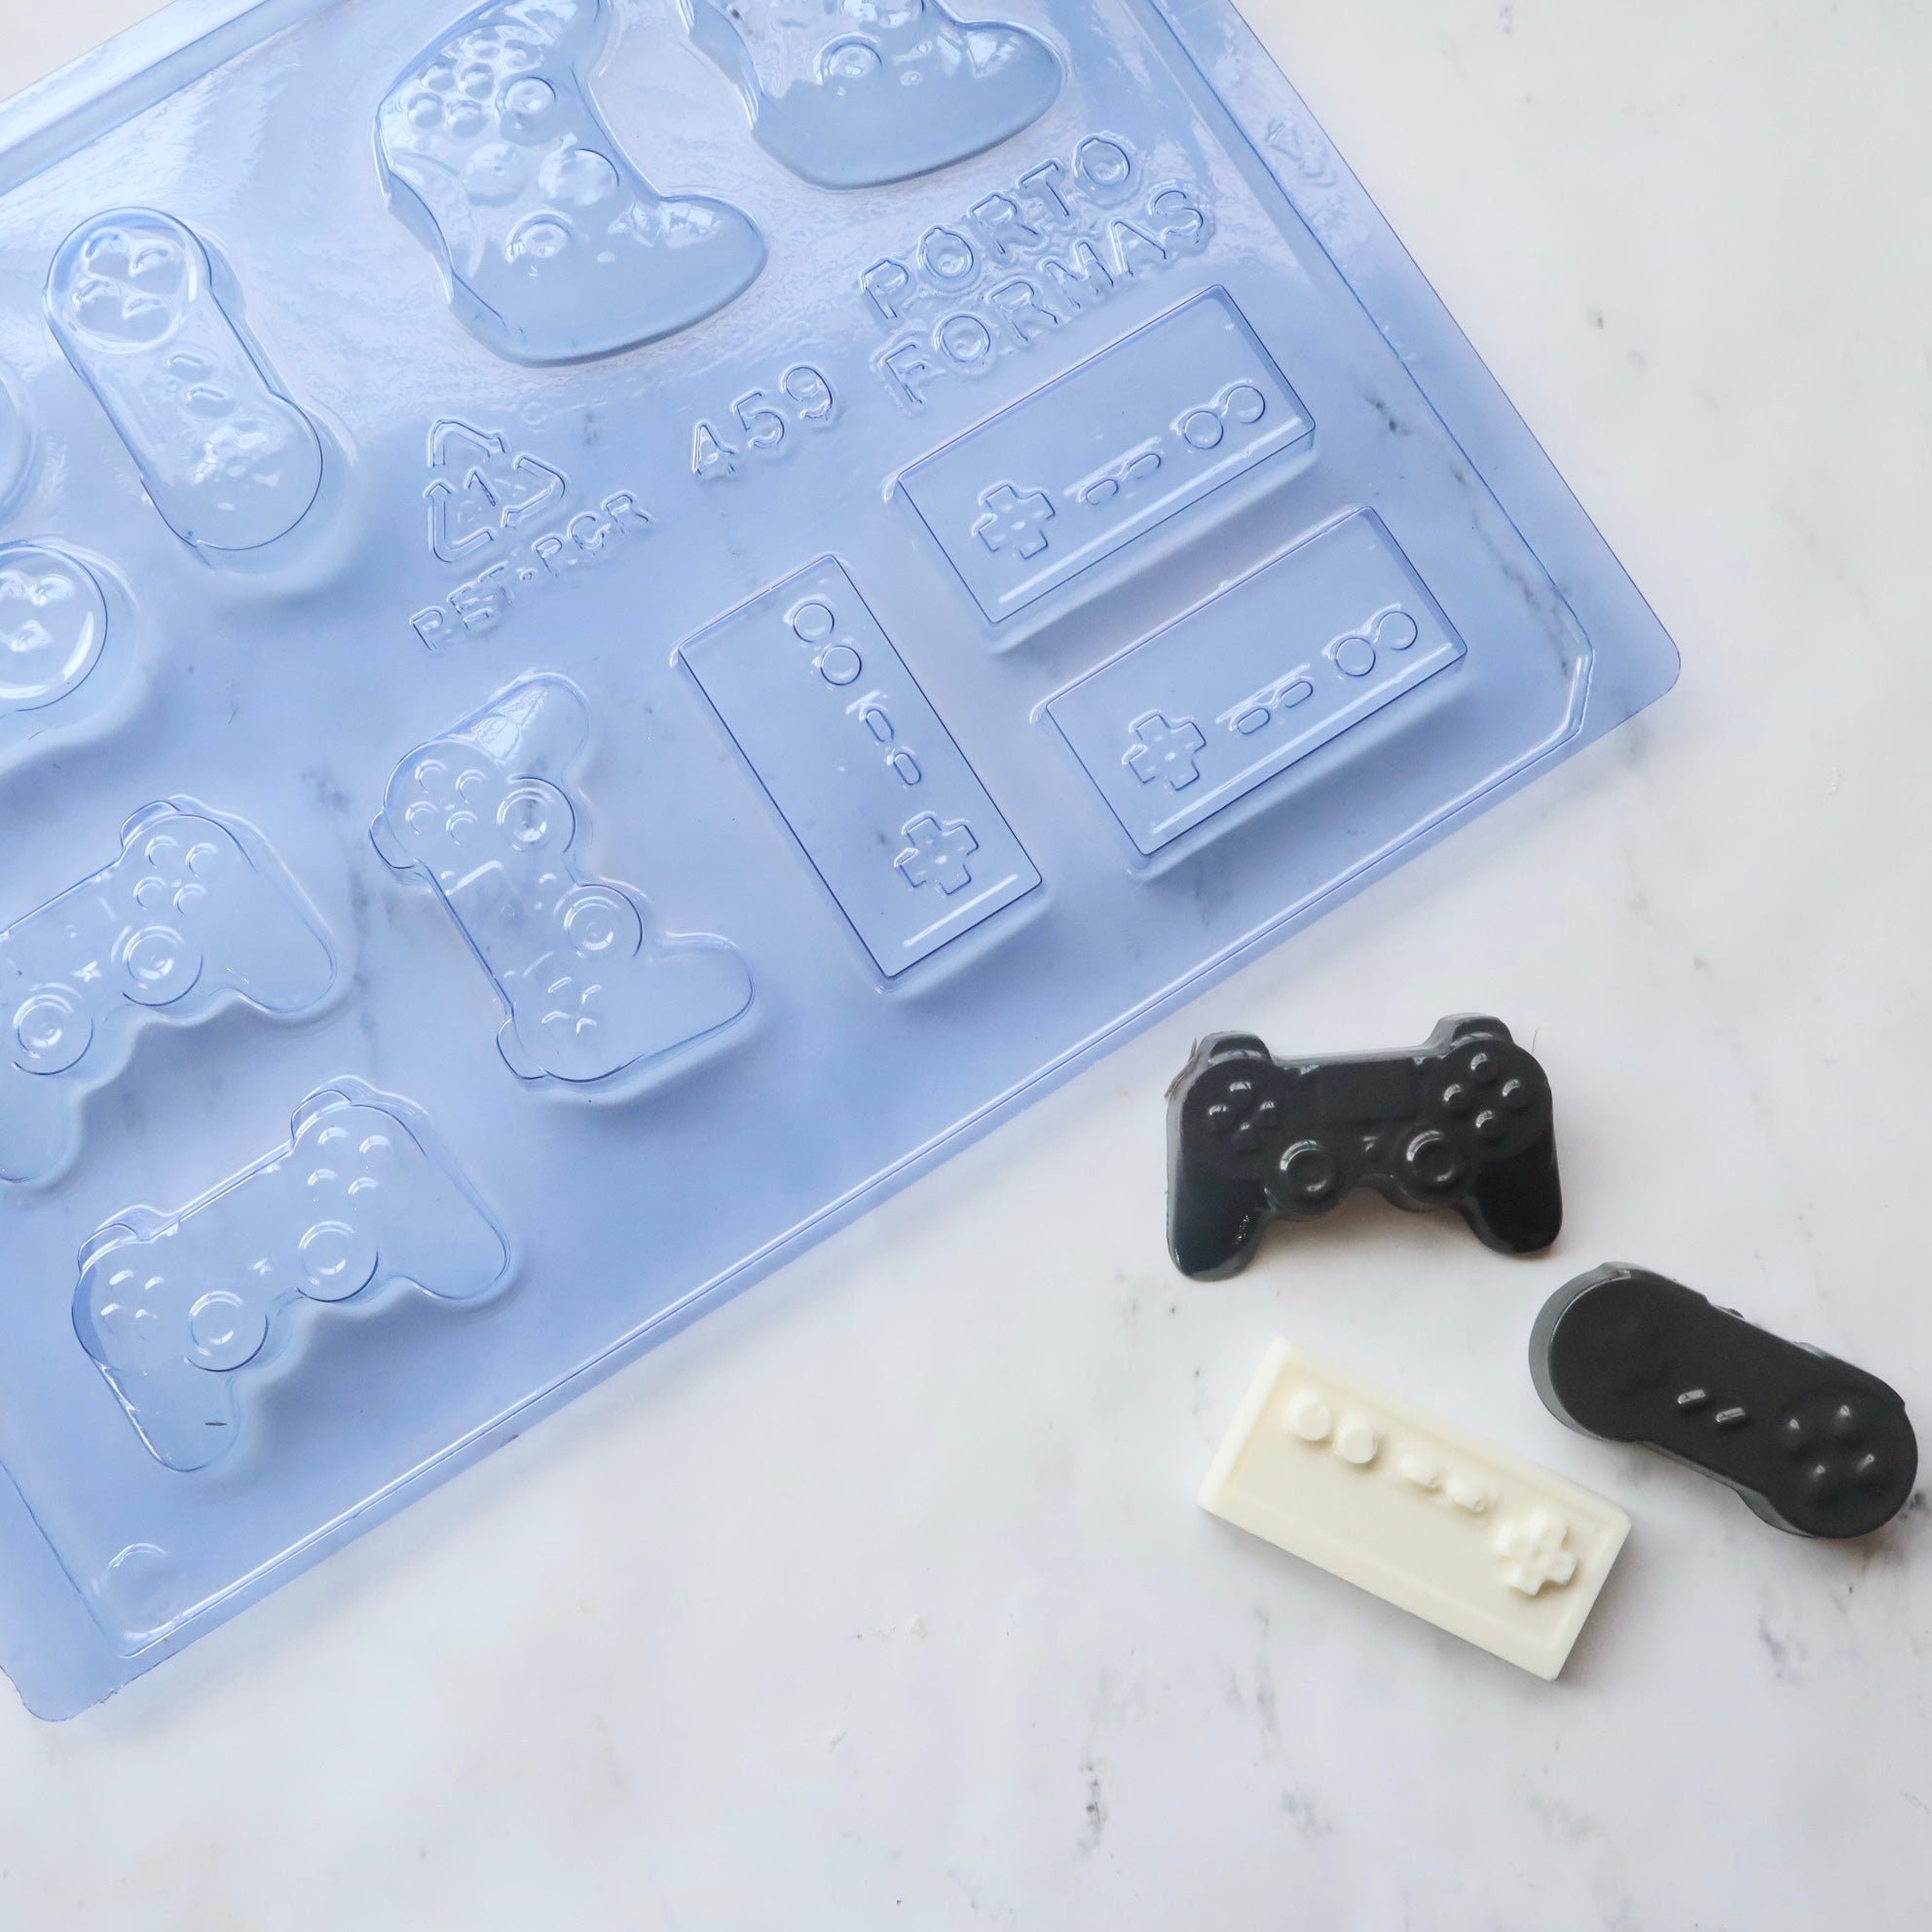 Manette de console en chocolat personnalisable avec votre texte - Taille  Réelle PS4 personnalisée chocolat paques noel